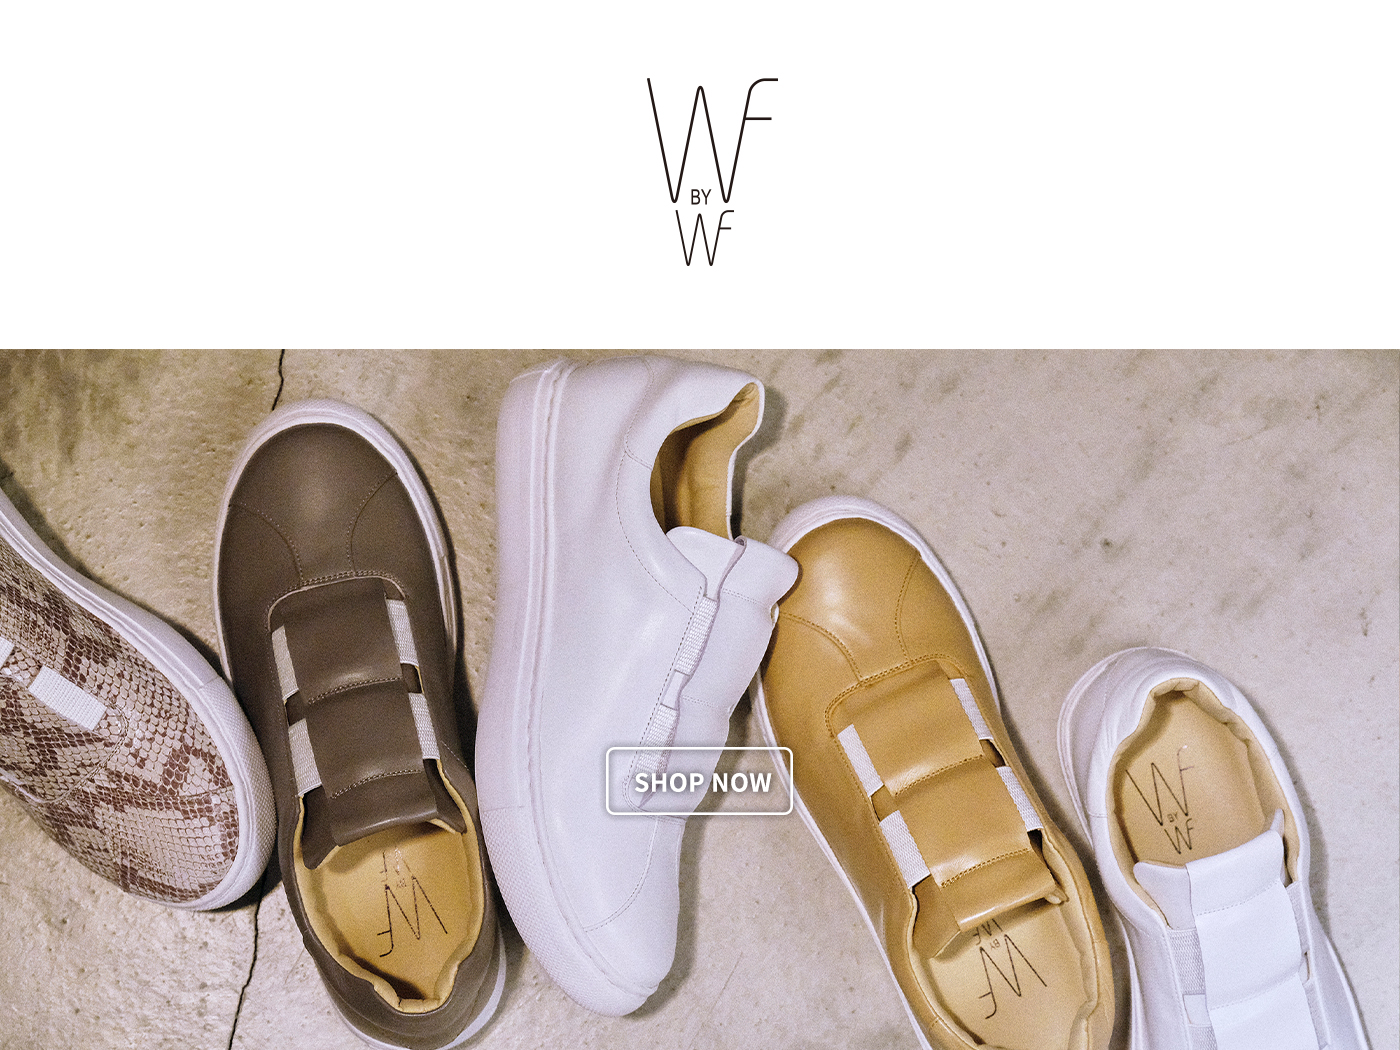 wisteria fujiwara,wf by wf,訂製鞋,皮鞋訂製,訂製